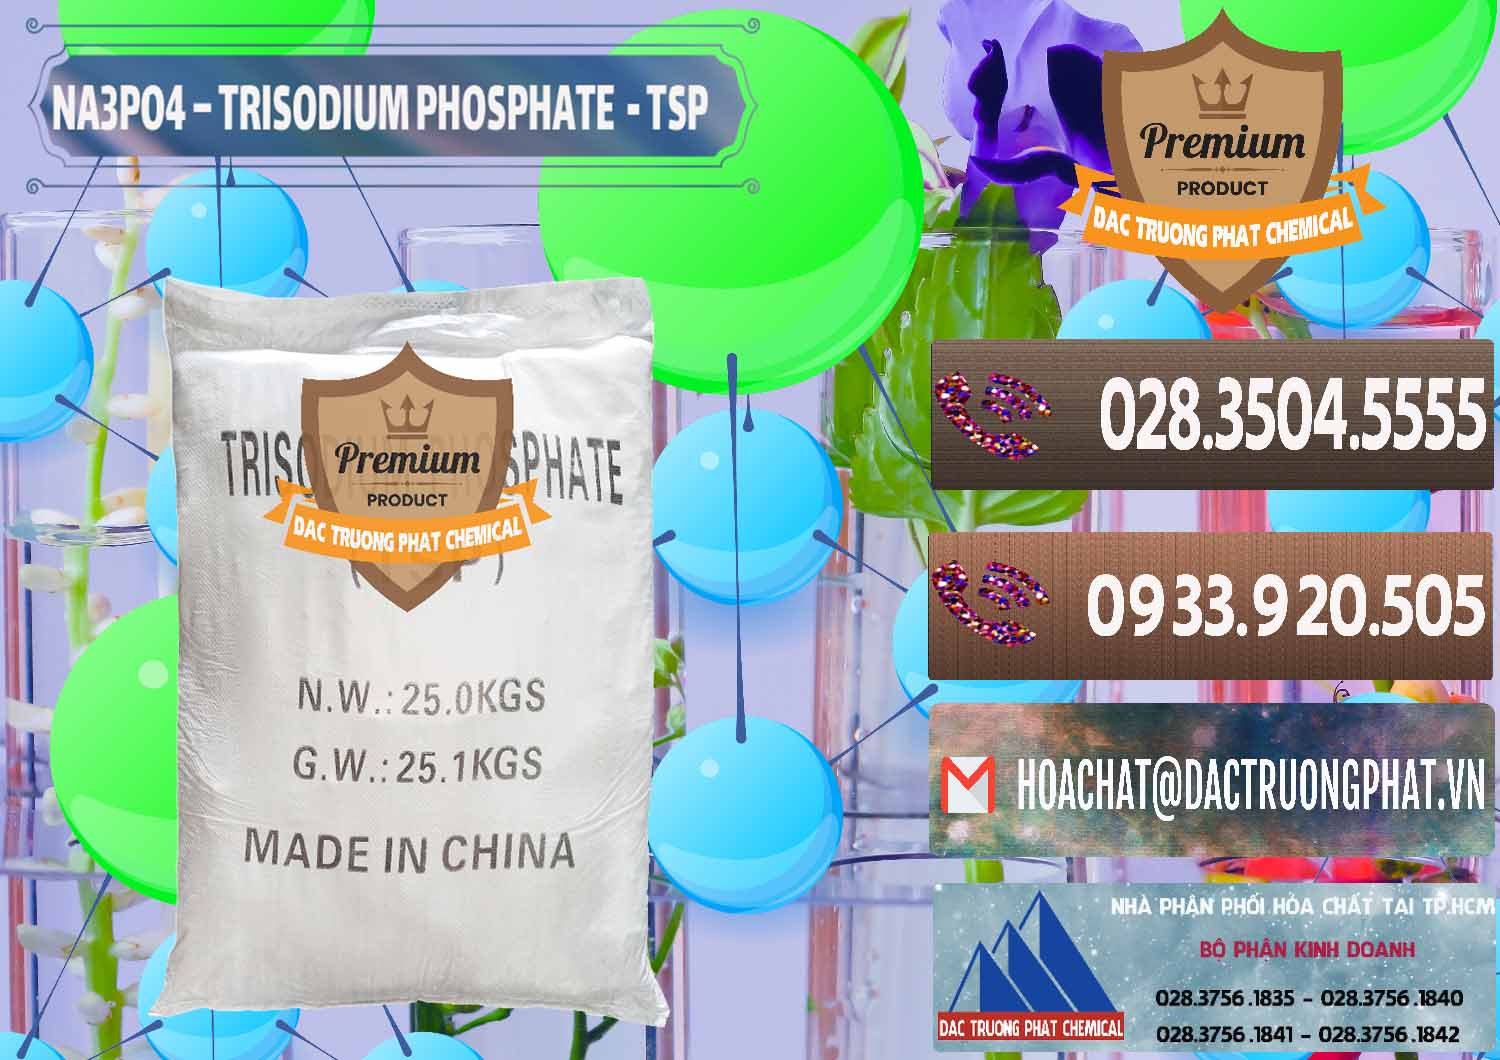 Cty chuyên kinh doanh & bán Na3PO4 – Trisodium Phosphate Trung Quốc China TSP - 0103 - Cty kinh doanh ( cung cấp ) hóa chất tại TP.HCM - hoachatviet.net